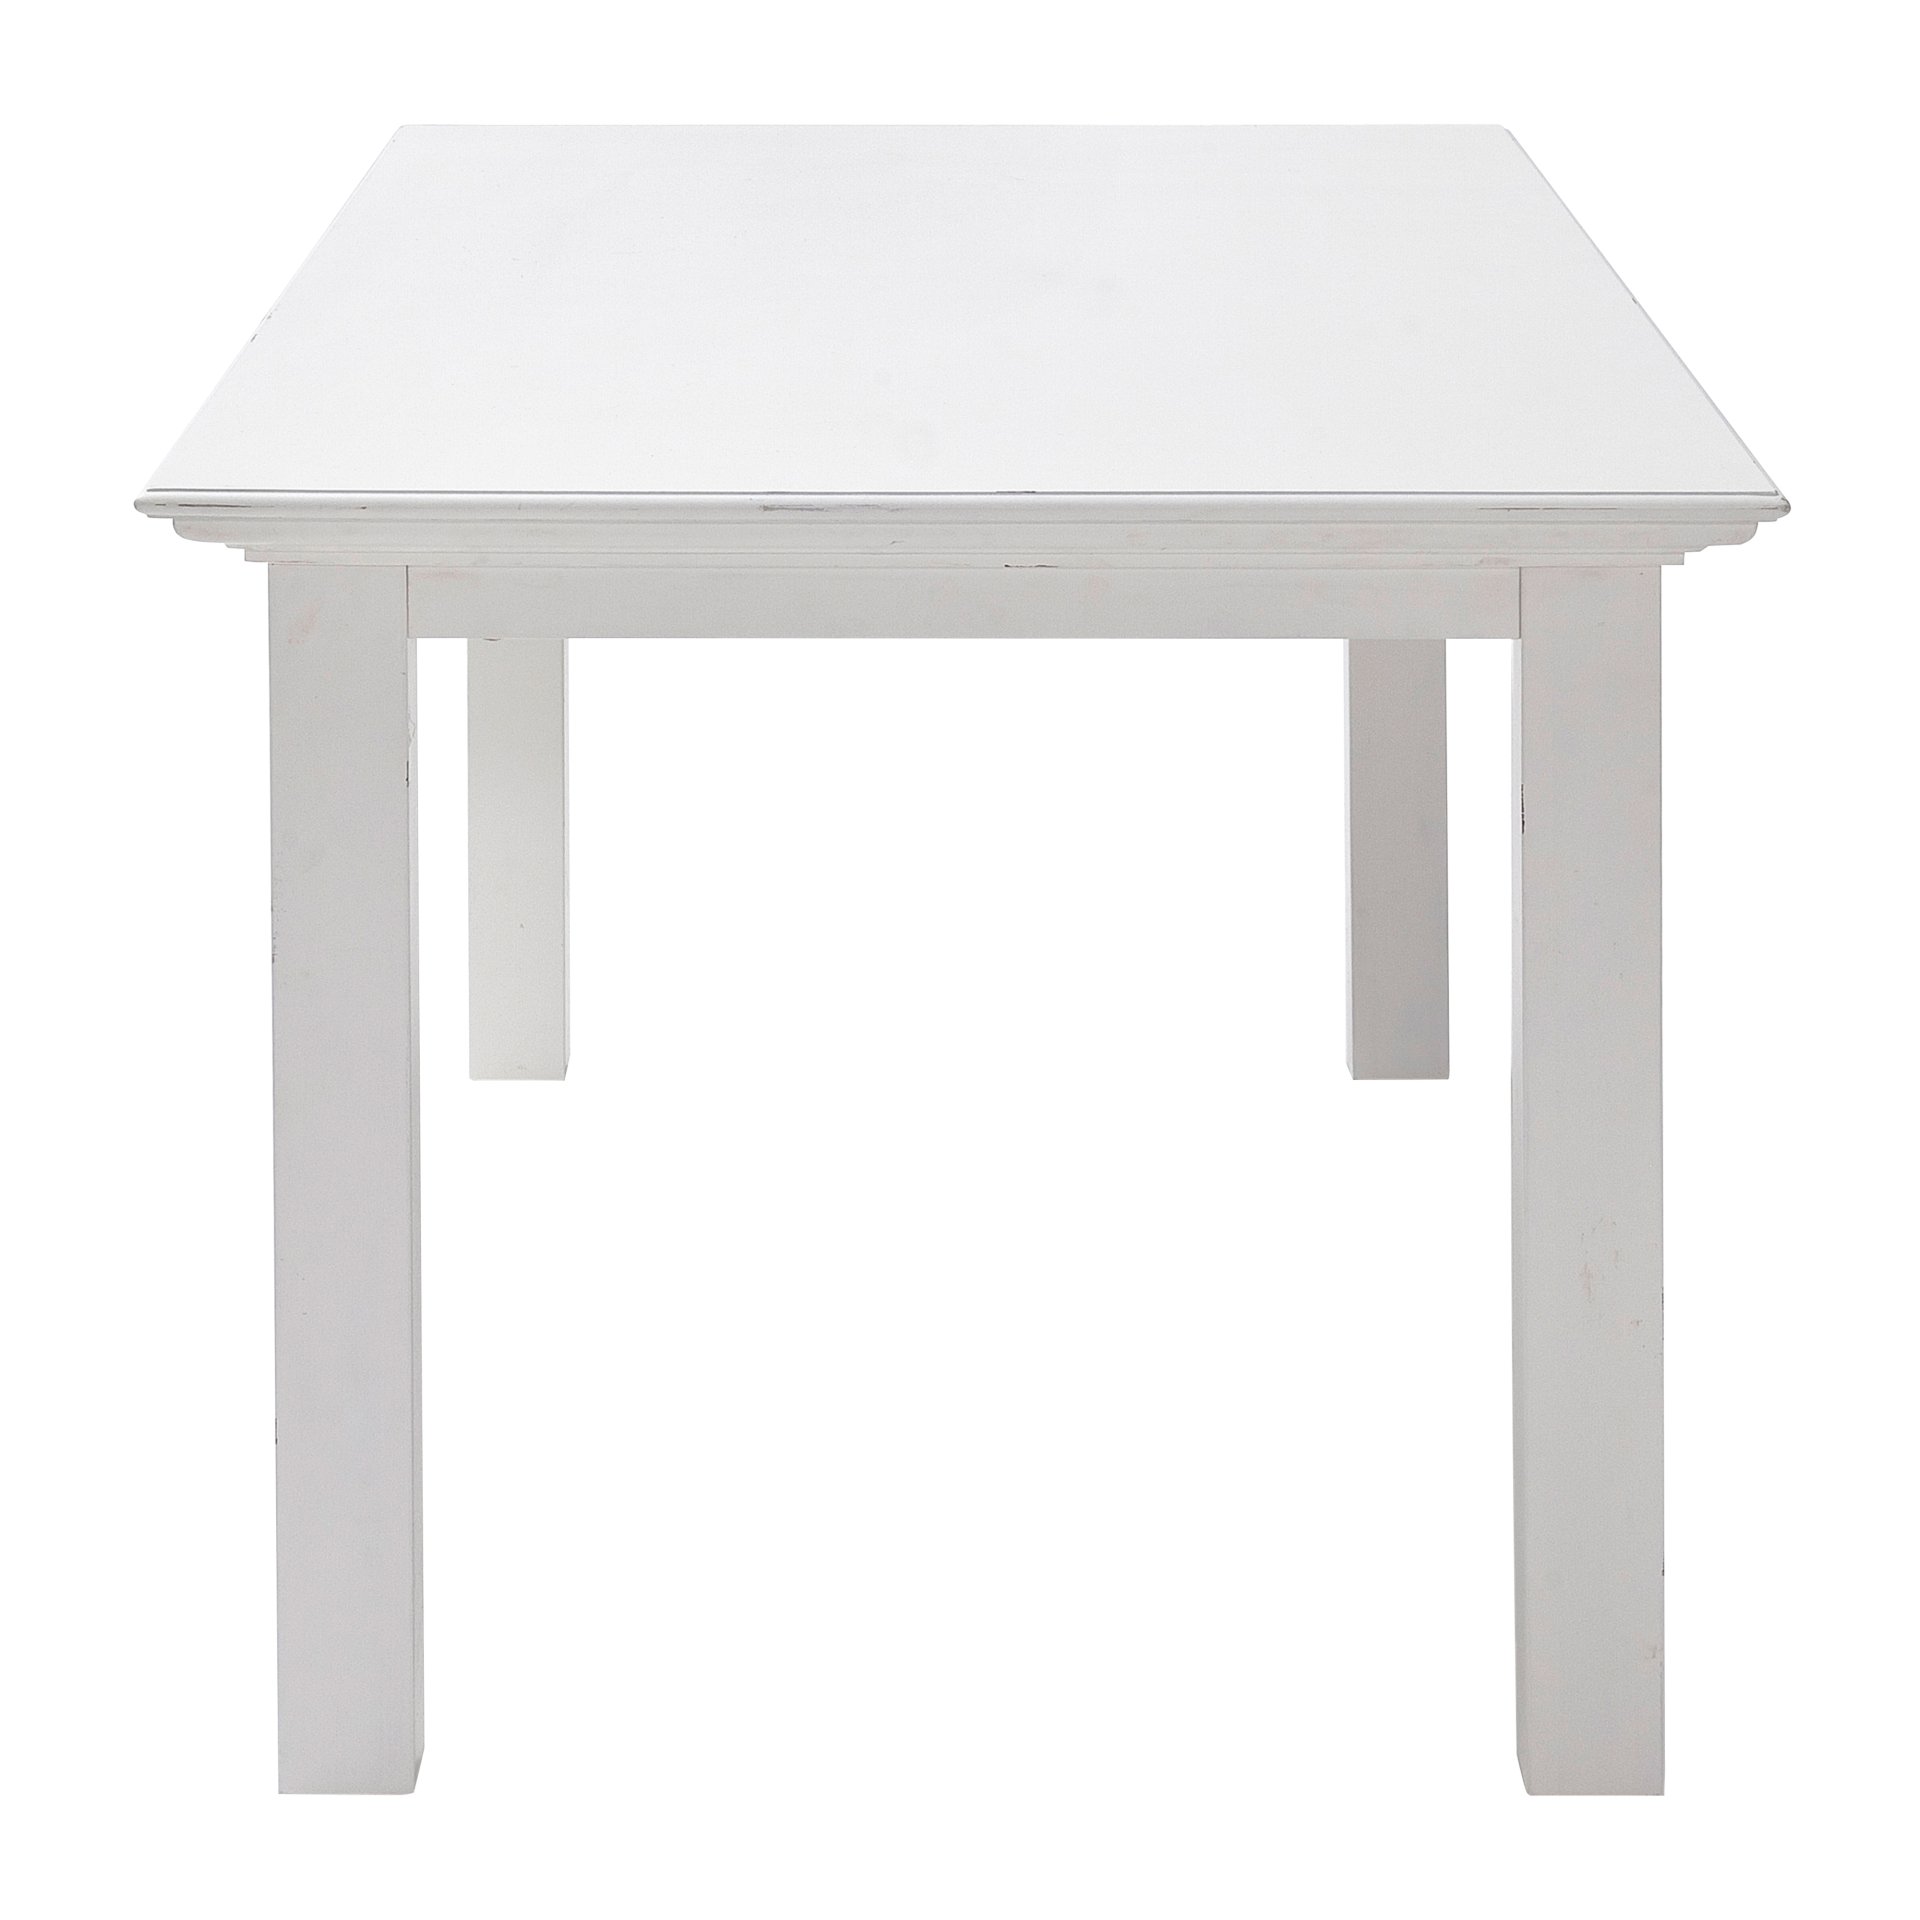 Der Esstisch Halifax überzeugt mit seinem Landhaus Stil. Gefertigt wurde er aus Mahagoni Holz, welches einen weißen Farbton besitzt. Der Tisch besitzt eine Breite von 200 cm.